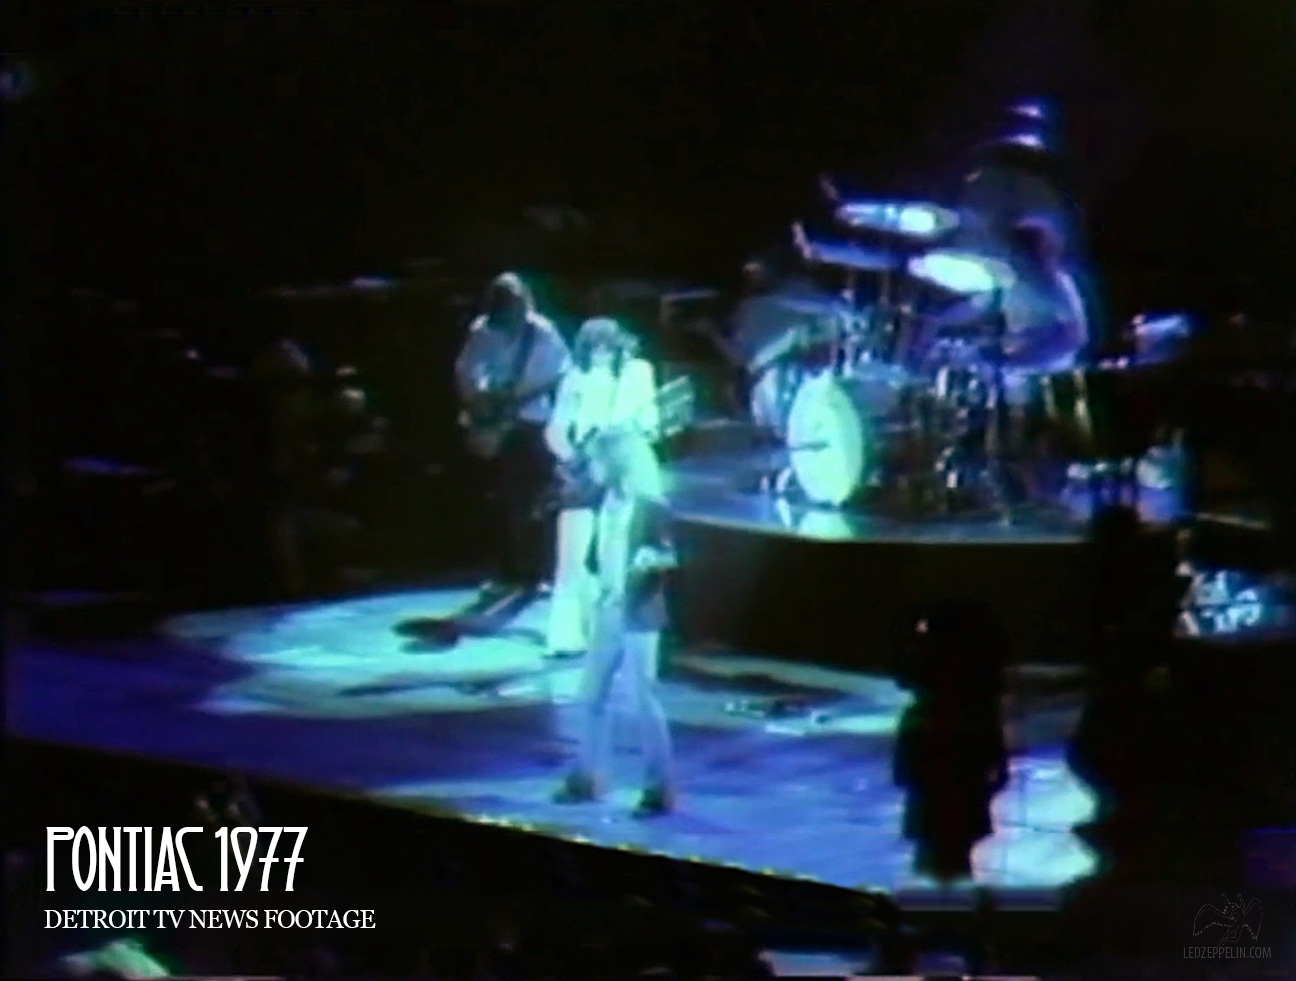 Pontiac 1977 (TV News footage screenshot)